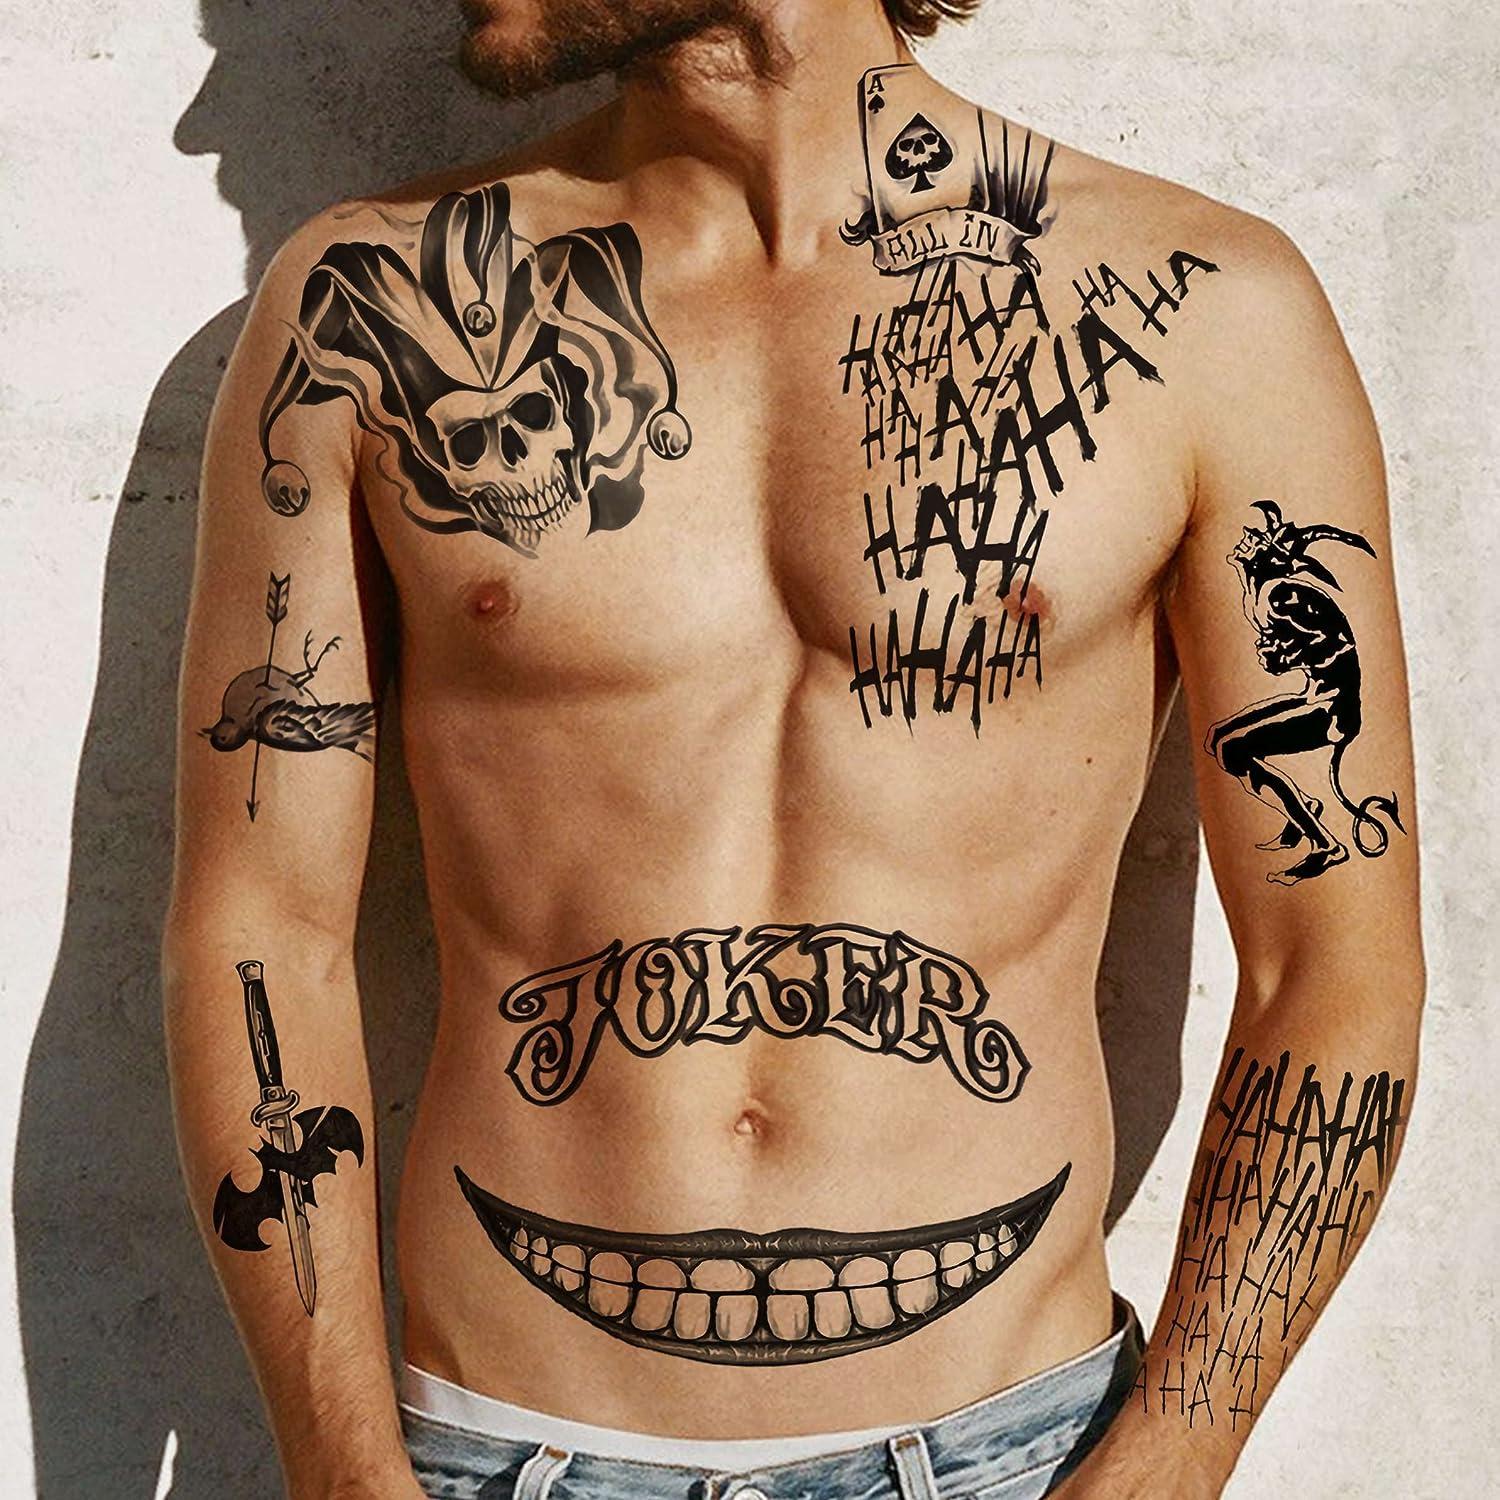 Voorkoms Joker Tattoo Waterproof Men and Women Temporary Body Tattoo :  Amazon.in: Beauty